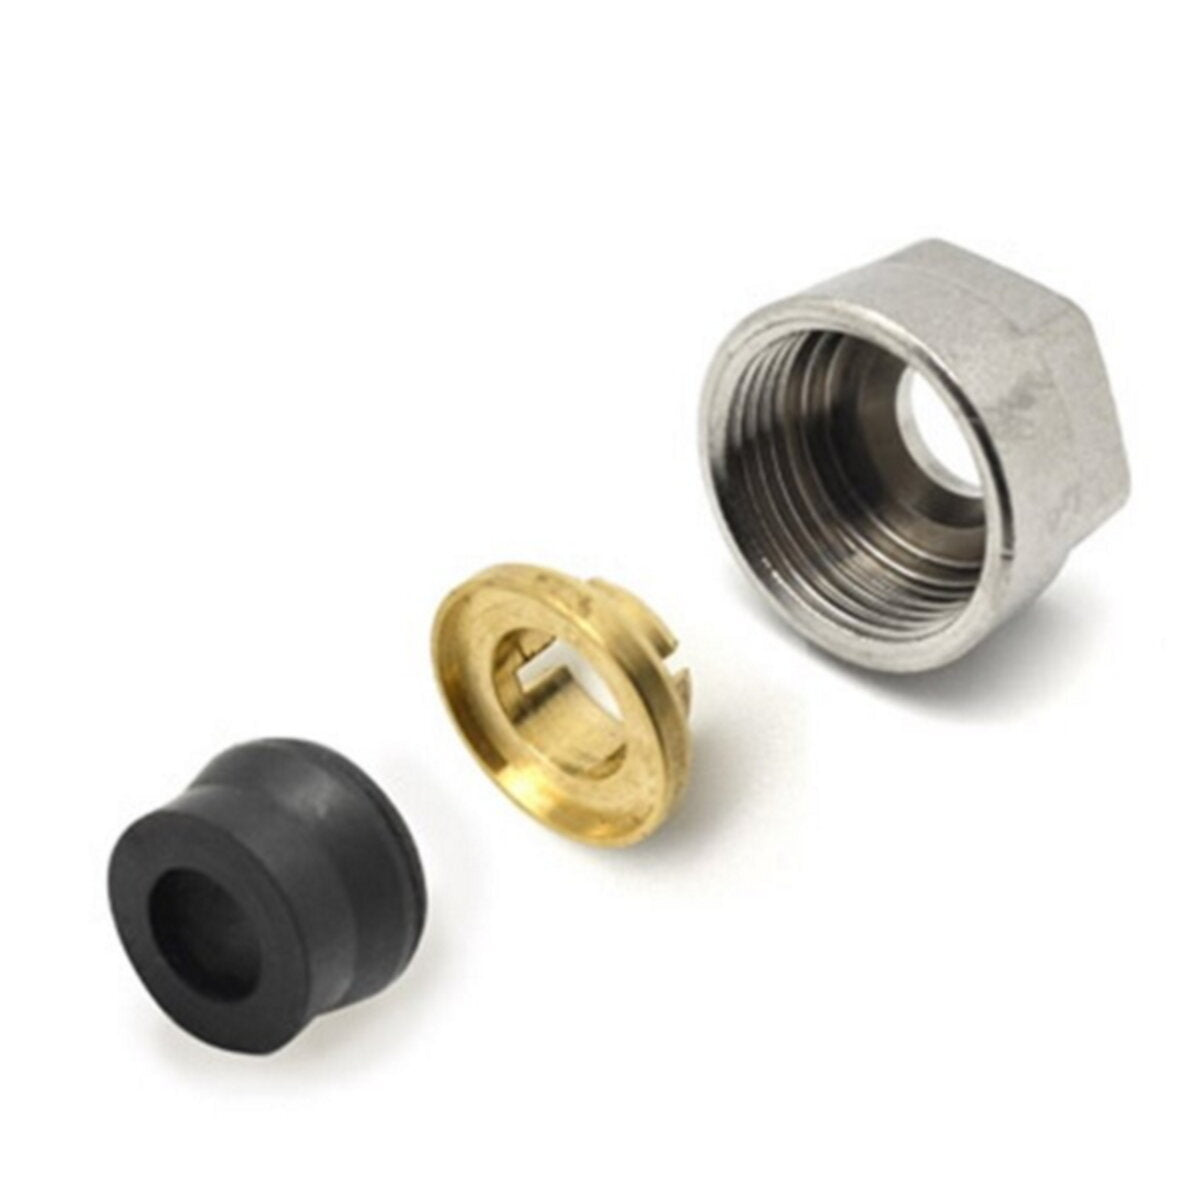 Rubber lockshield valve fitting for copper pipe 16mmx2 for Ercos lockshield valves